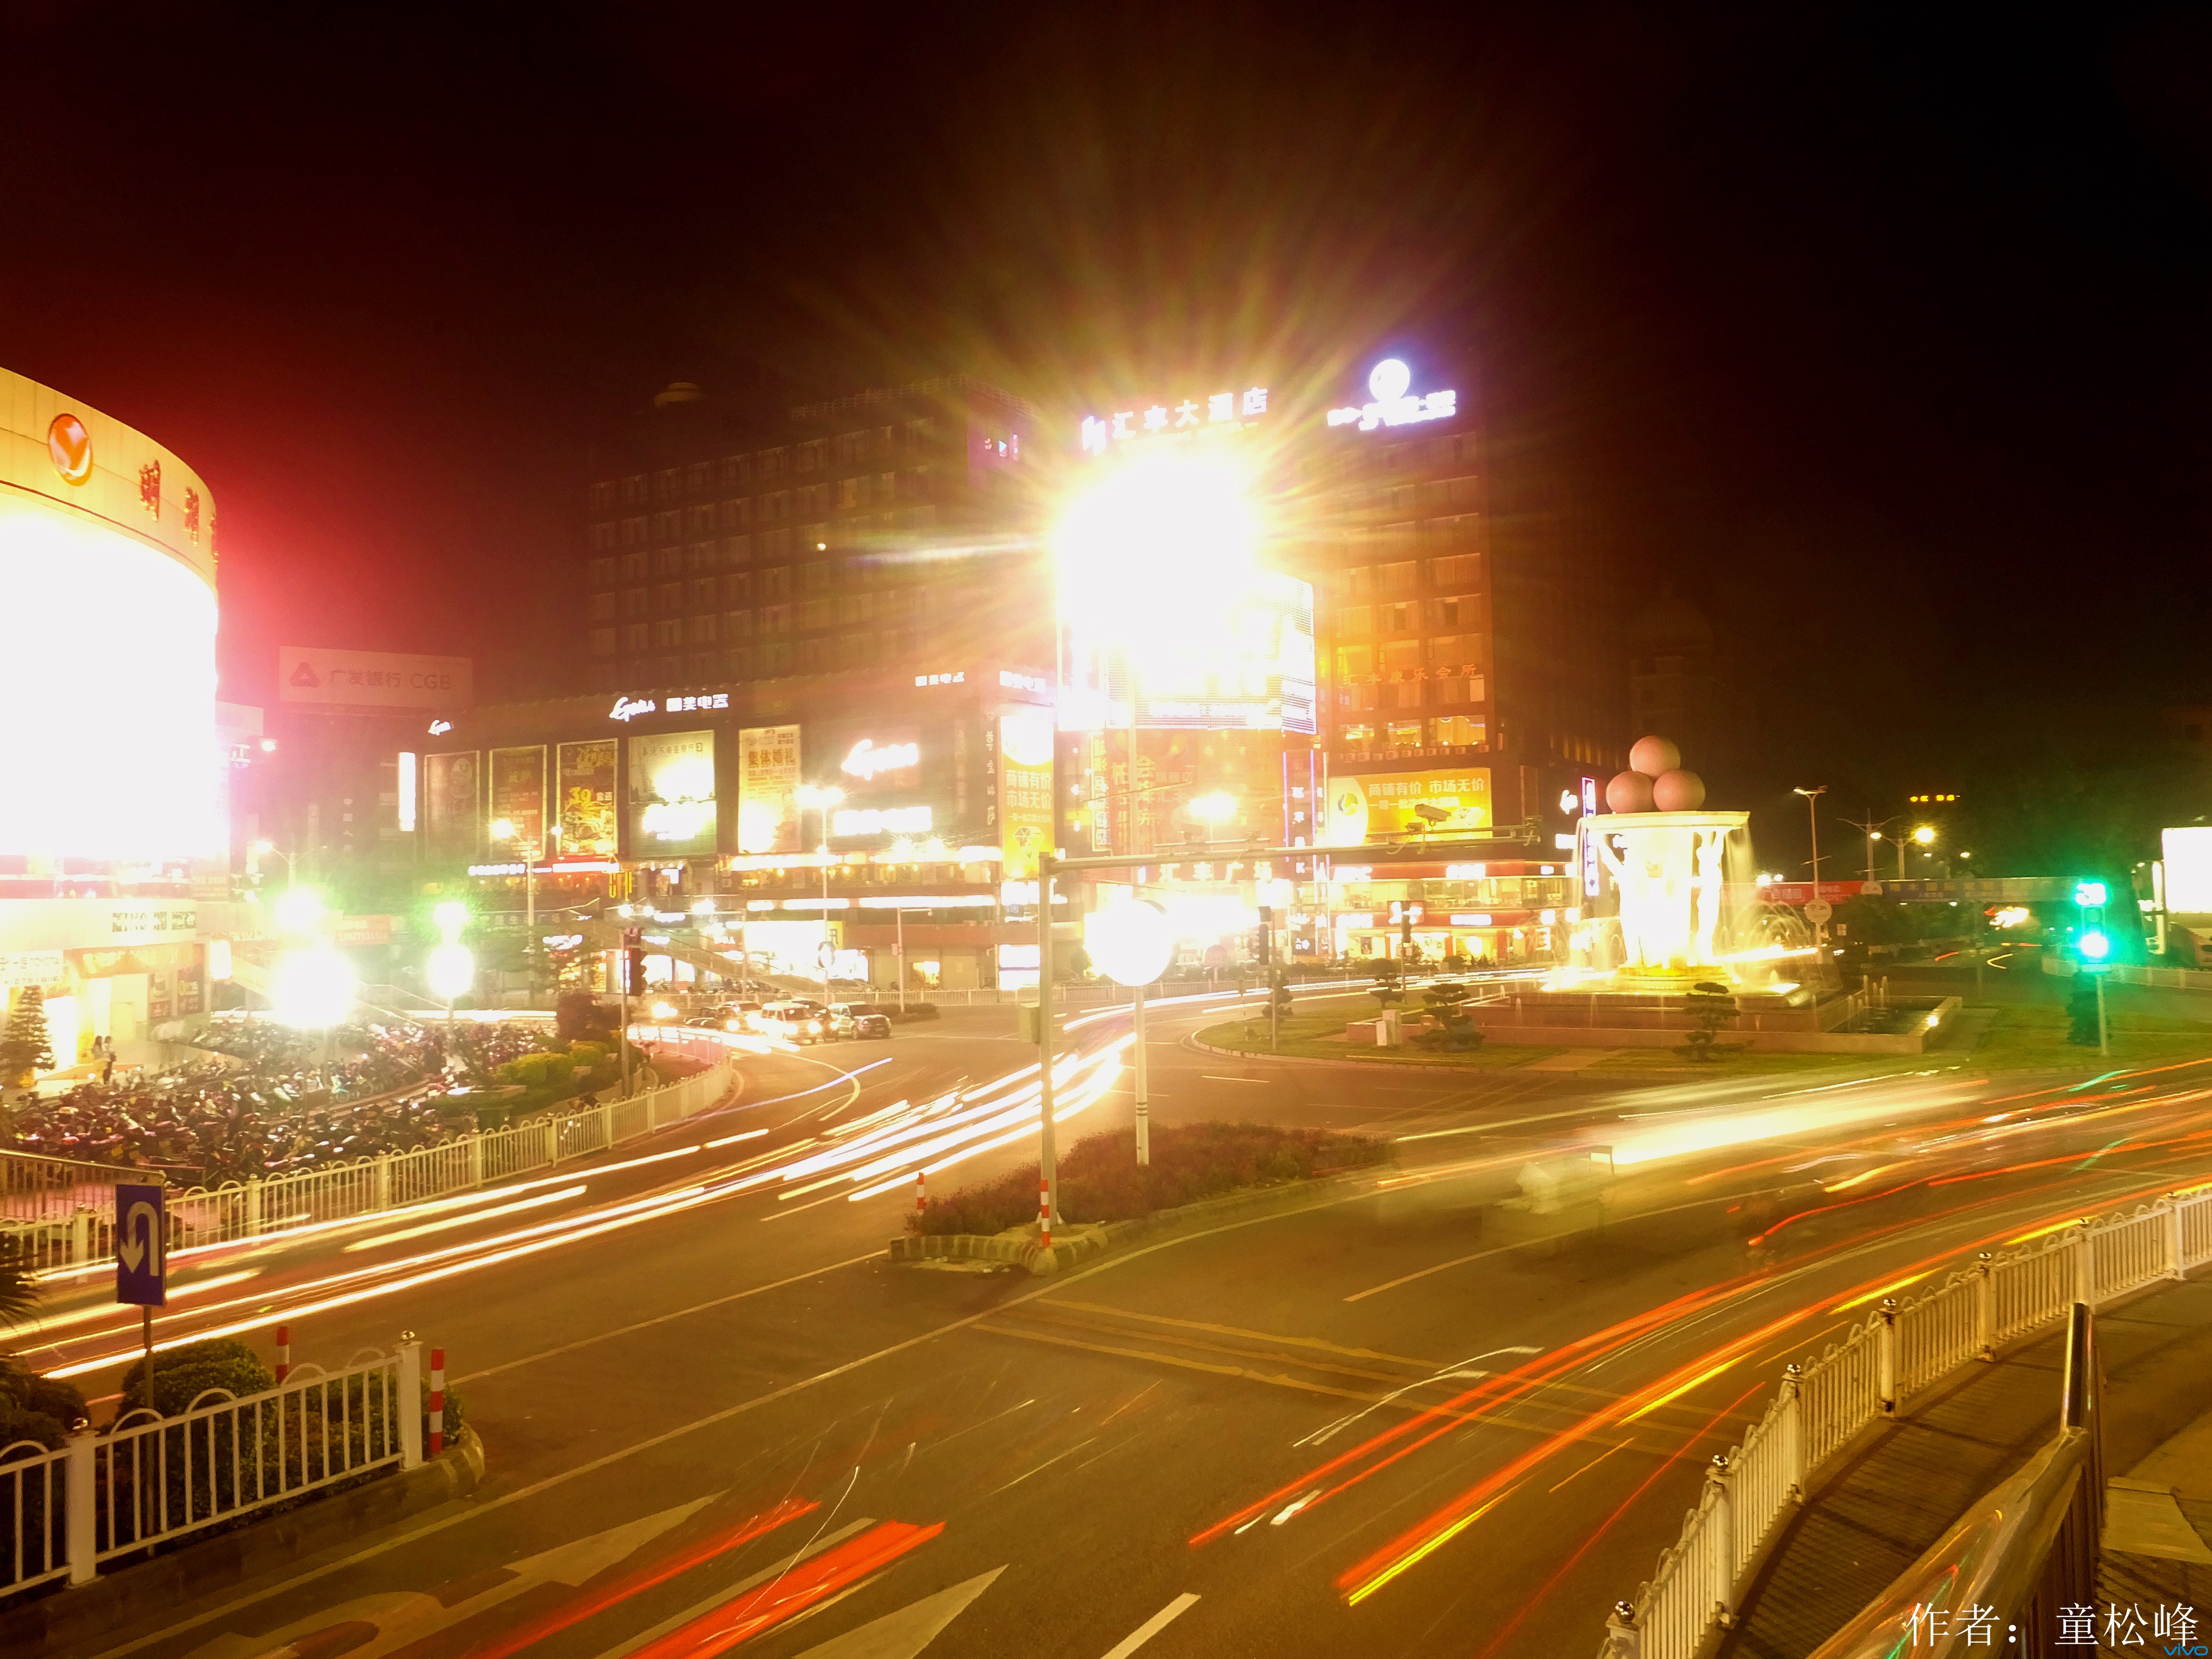 【摄影作品分享】茂名市 夜景